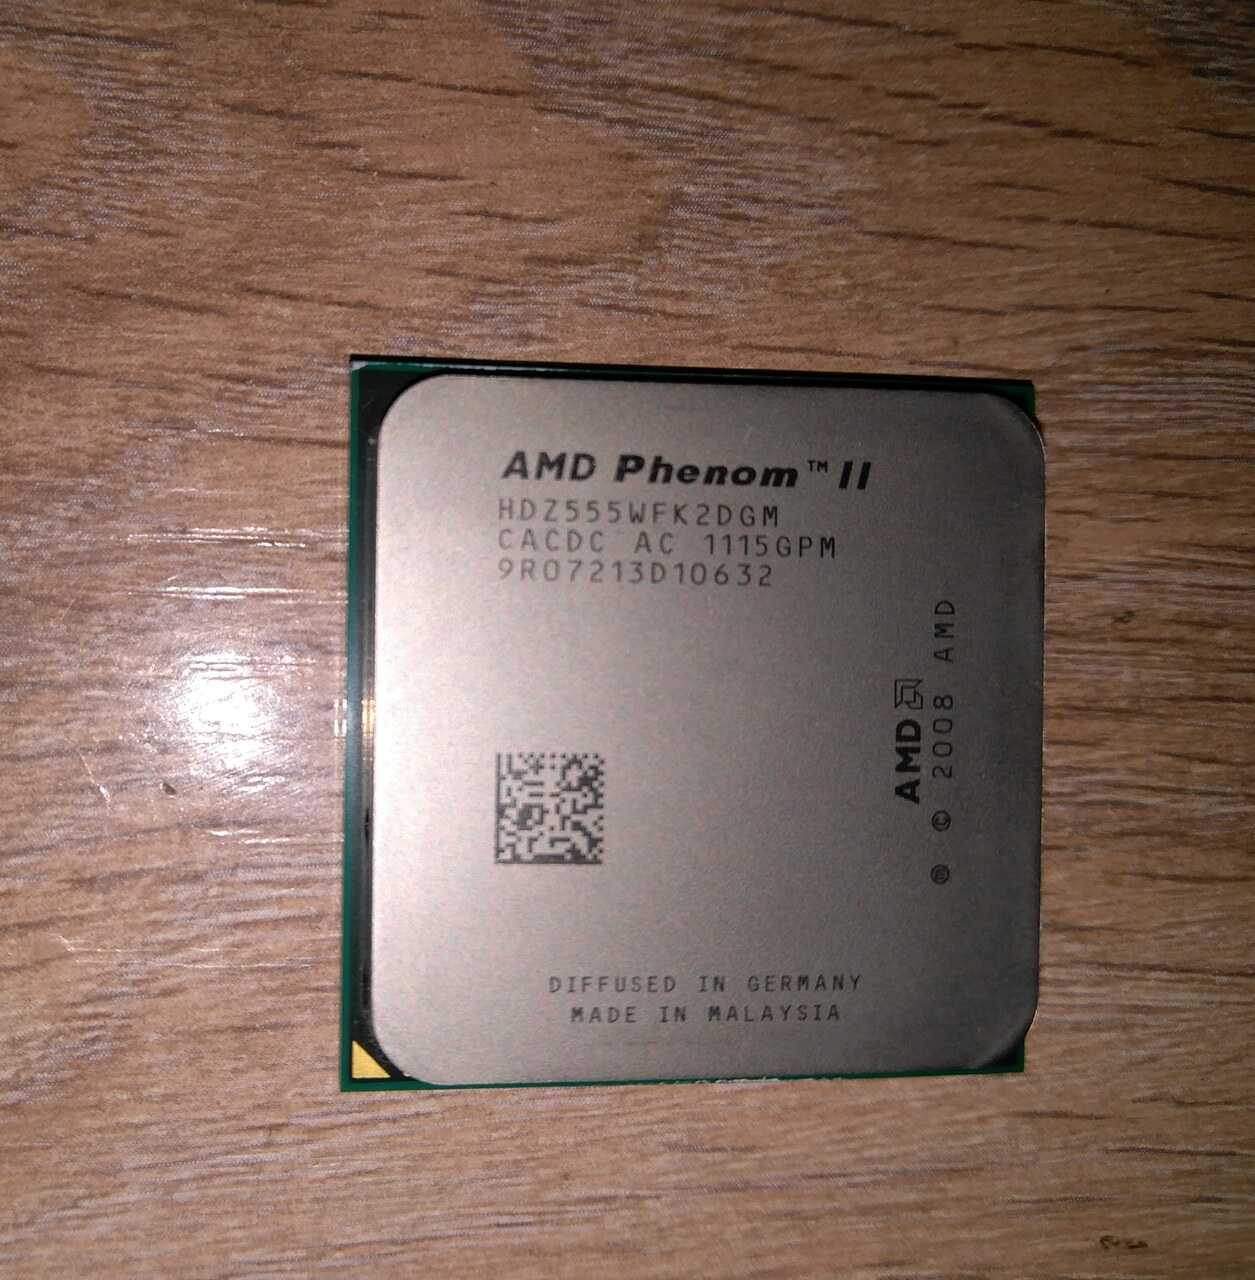 Основные технические характеристики AMD Phenom II и Athlon II